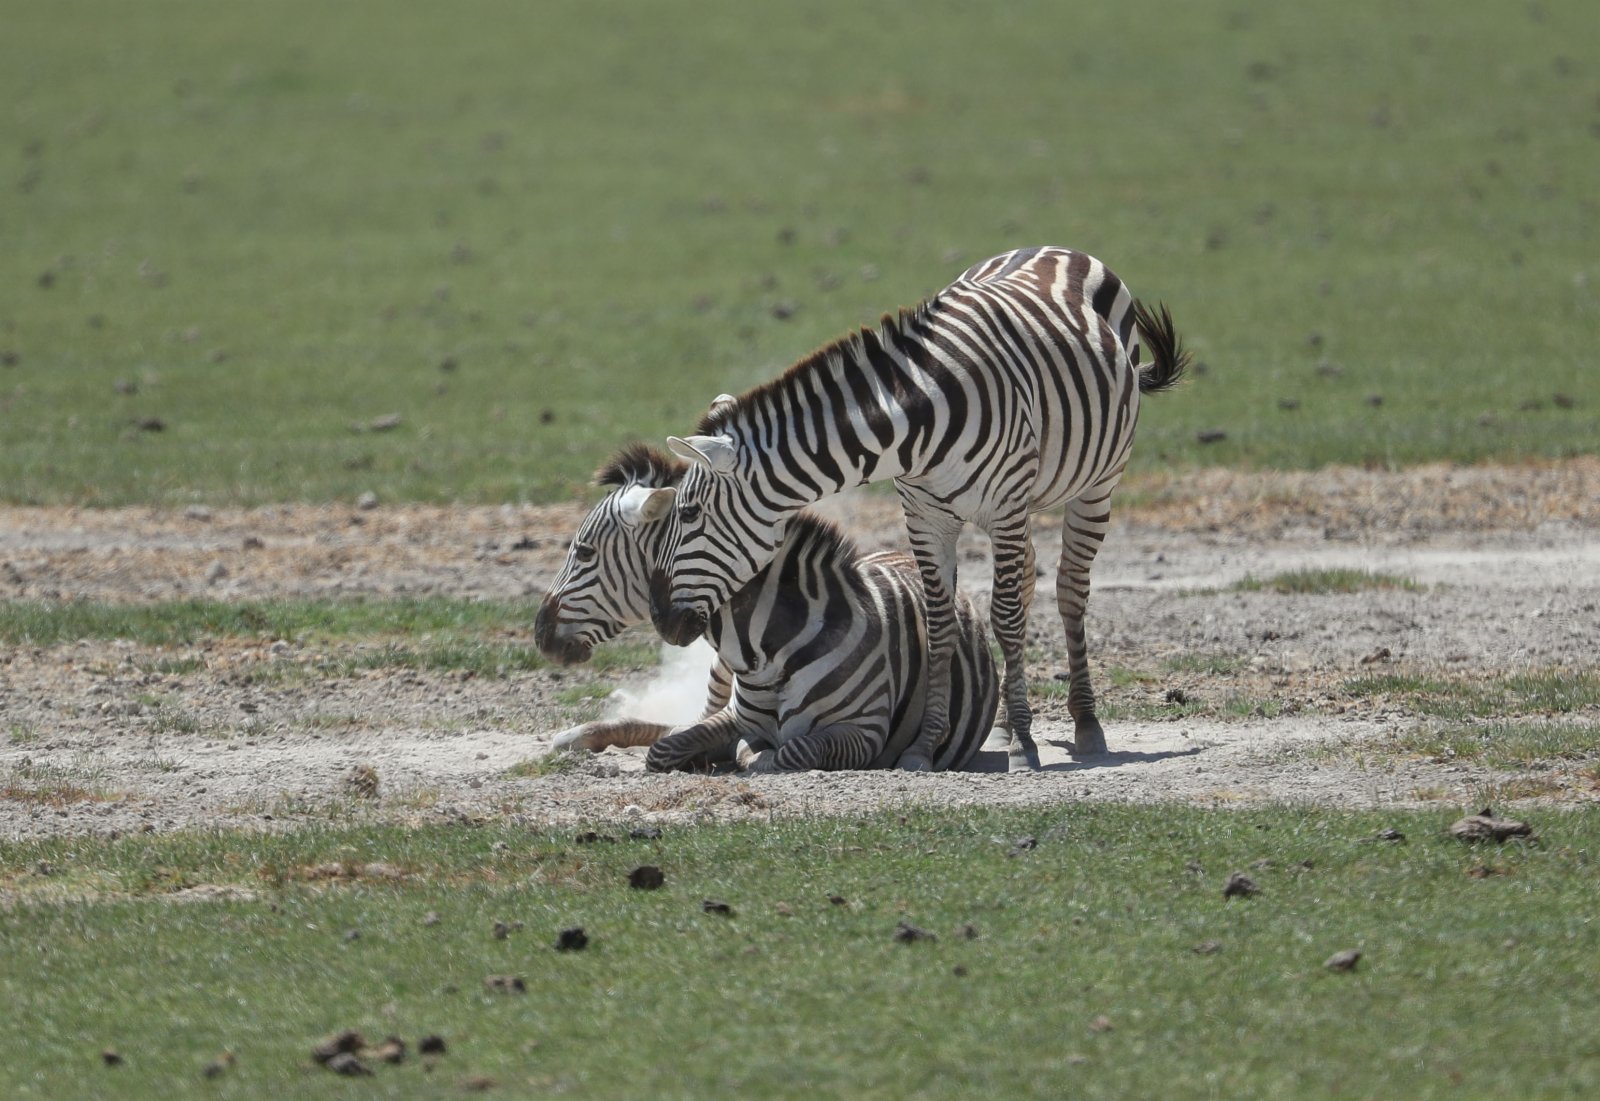 這是6月11日在肯尼亚安博塞利國家公園拍攝的斑馬。